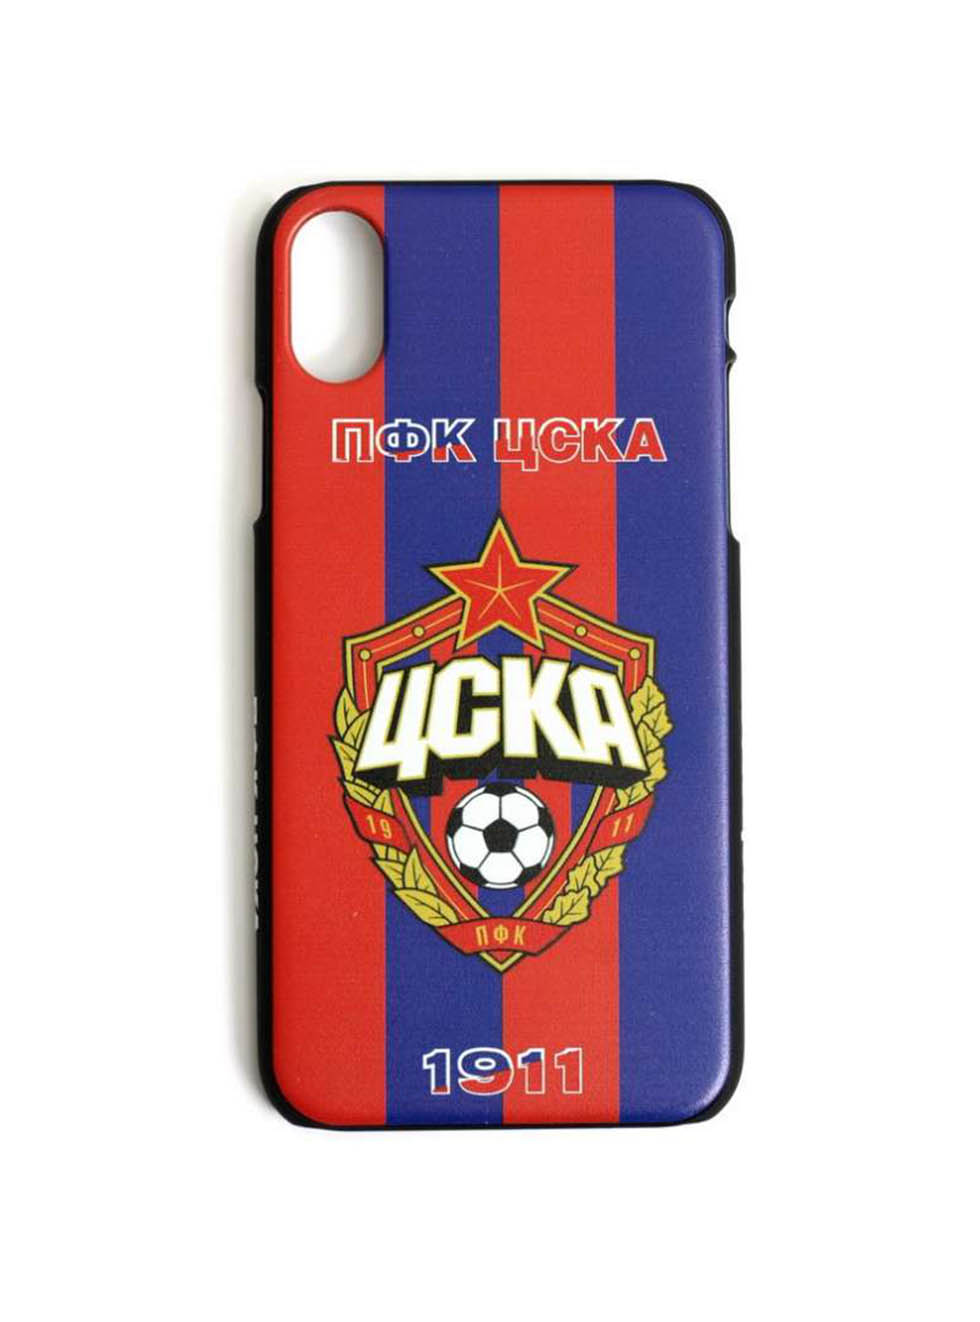 Клип-кейс ПФК ЦСКА 1911 для iPhone, цвет красно-синий (IPhone 7Plus / 8Plus)